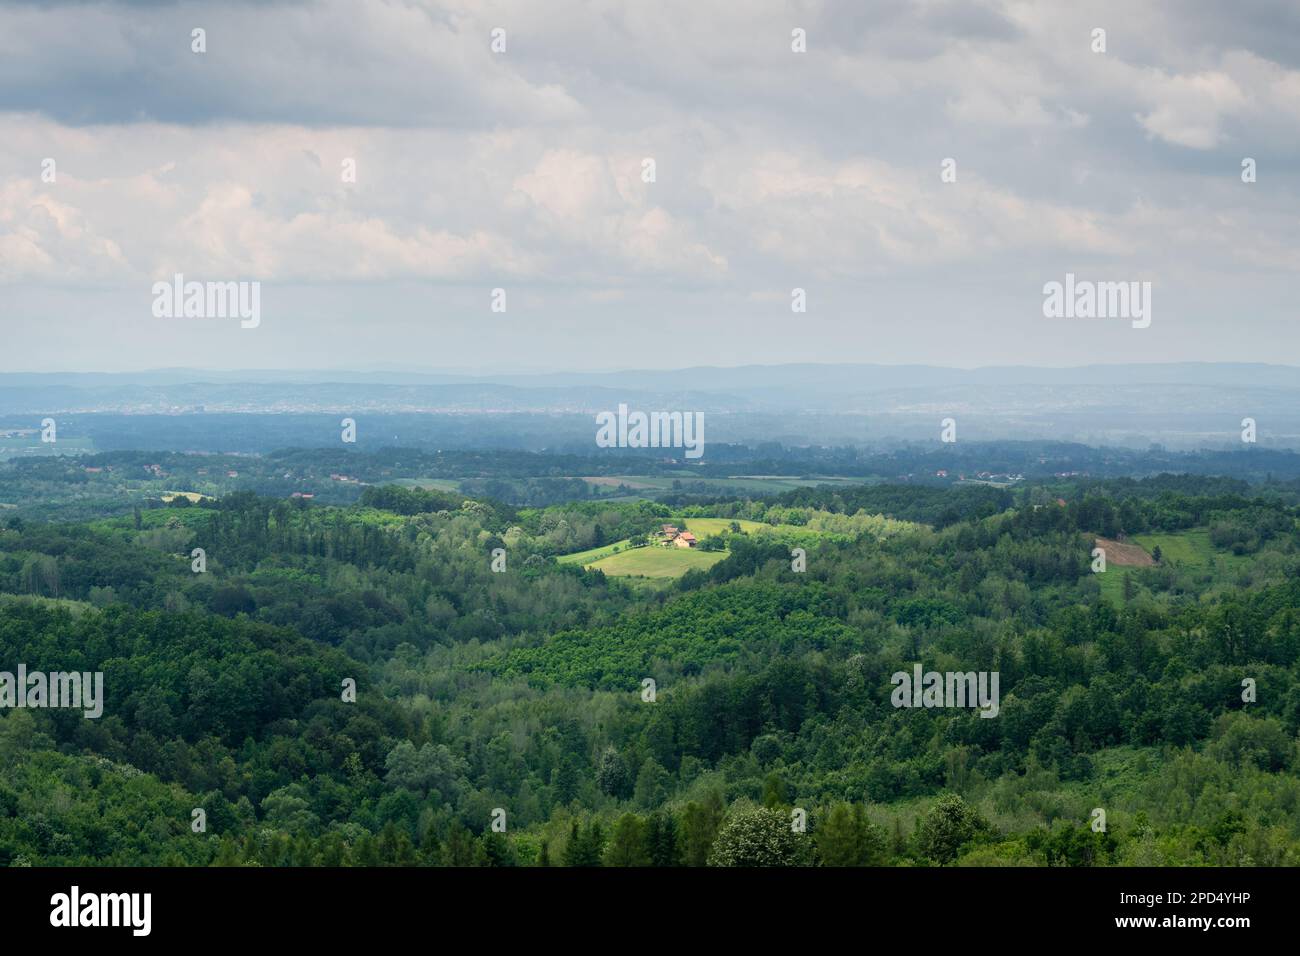 Hügelige Landschaft mit üppigen Wäldern an bewölkten Tagen, Landschaft mit Sonnenflecken auf verstreuten Dörfern und fernen Hügelsilhouetten in Nebel Stockfoto